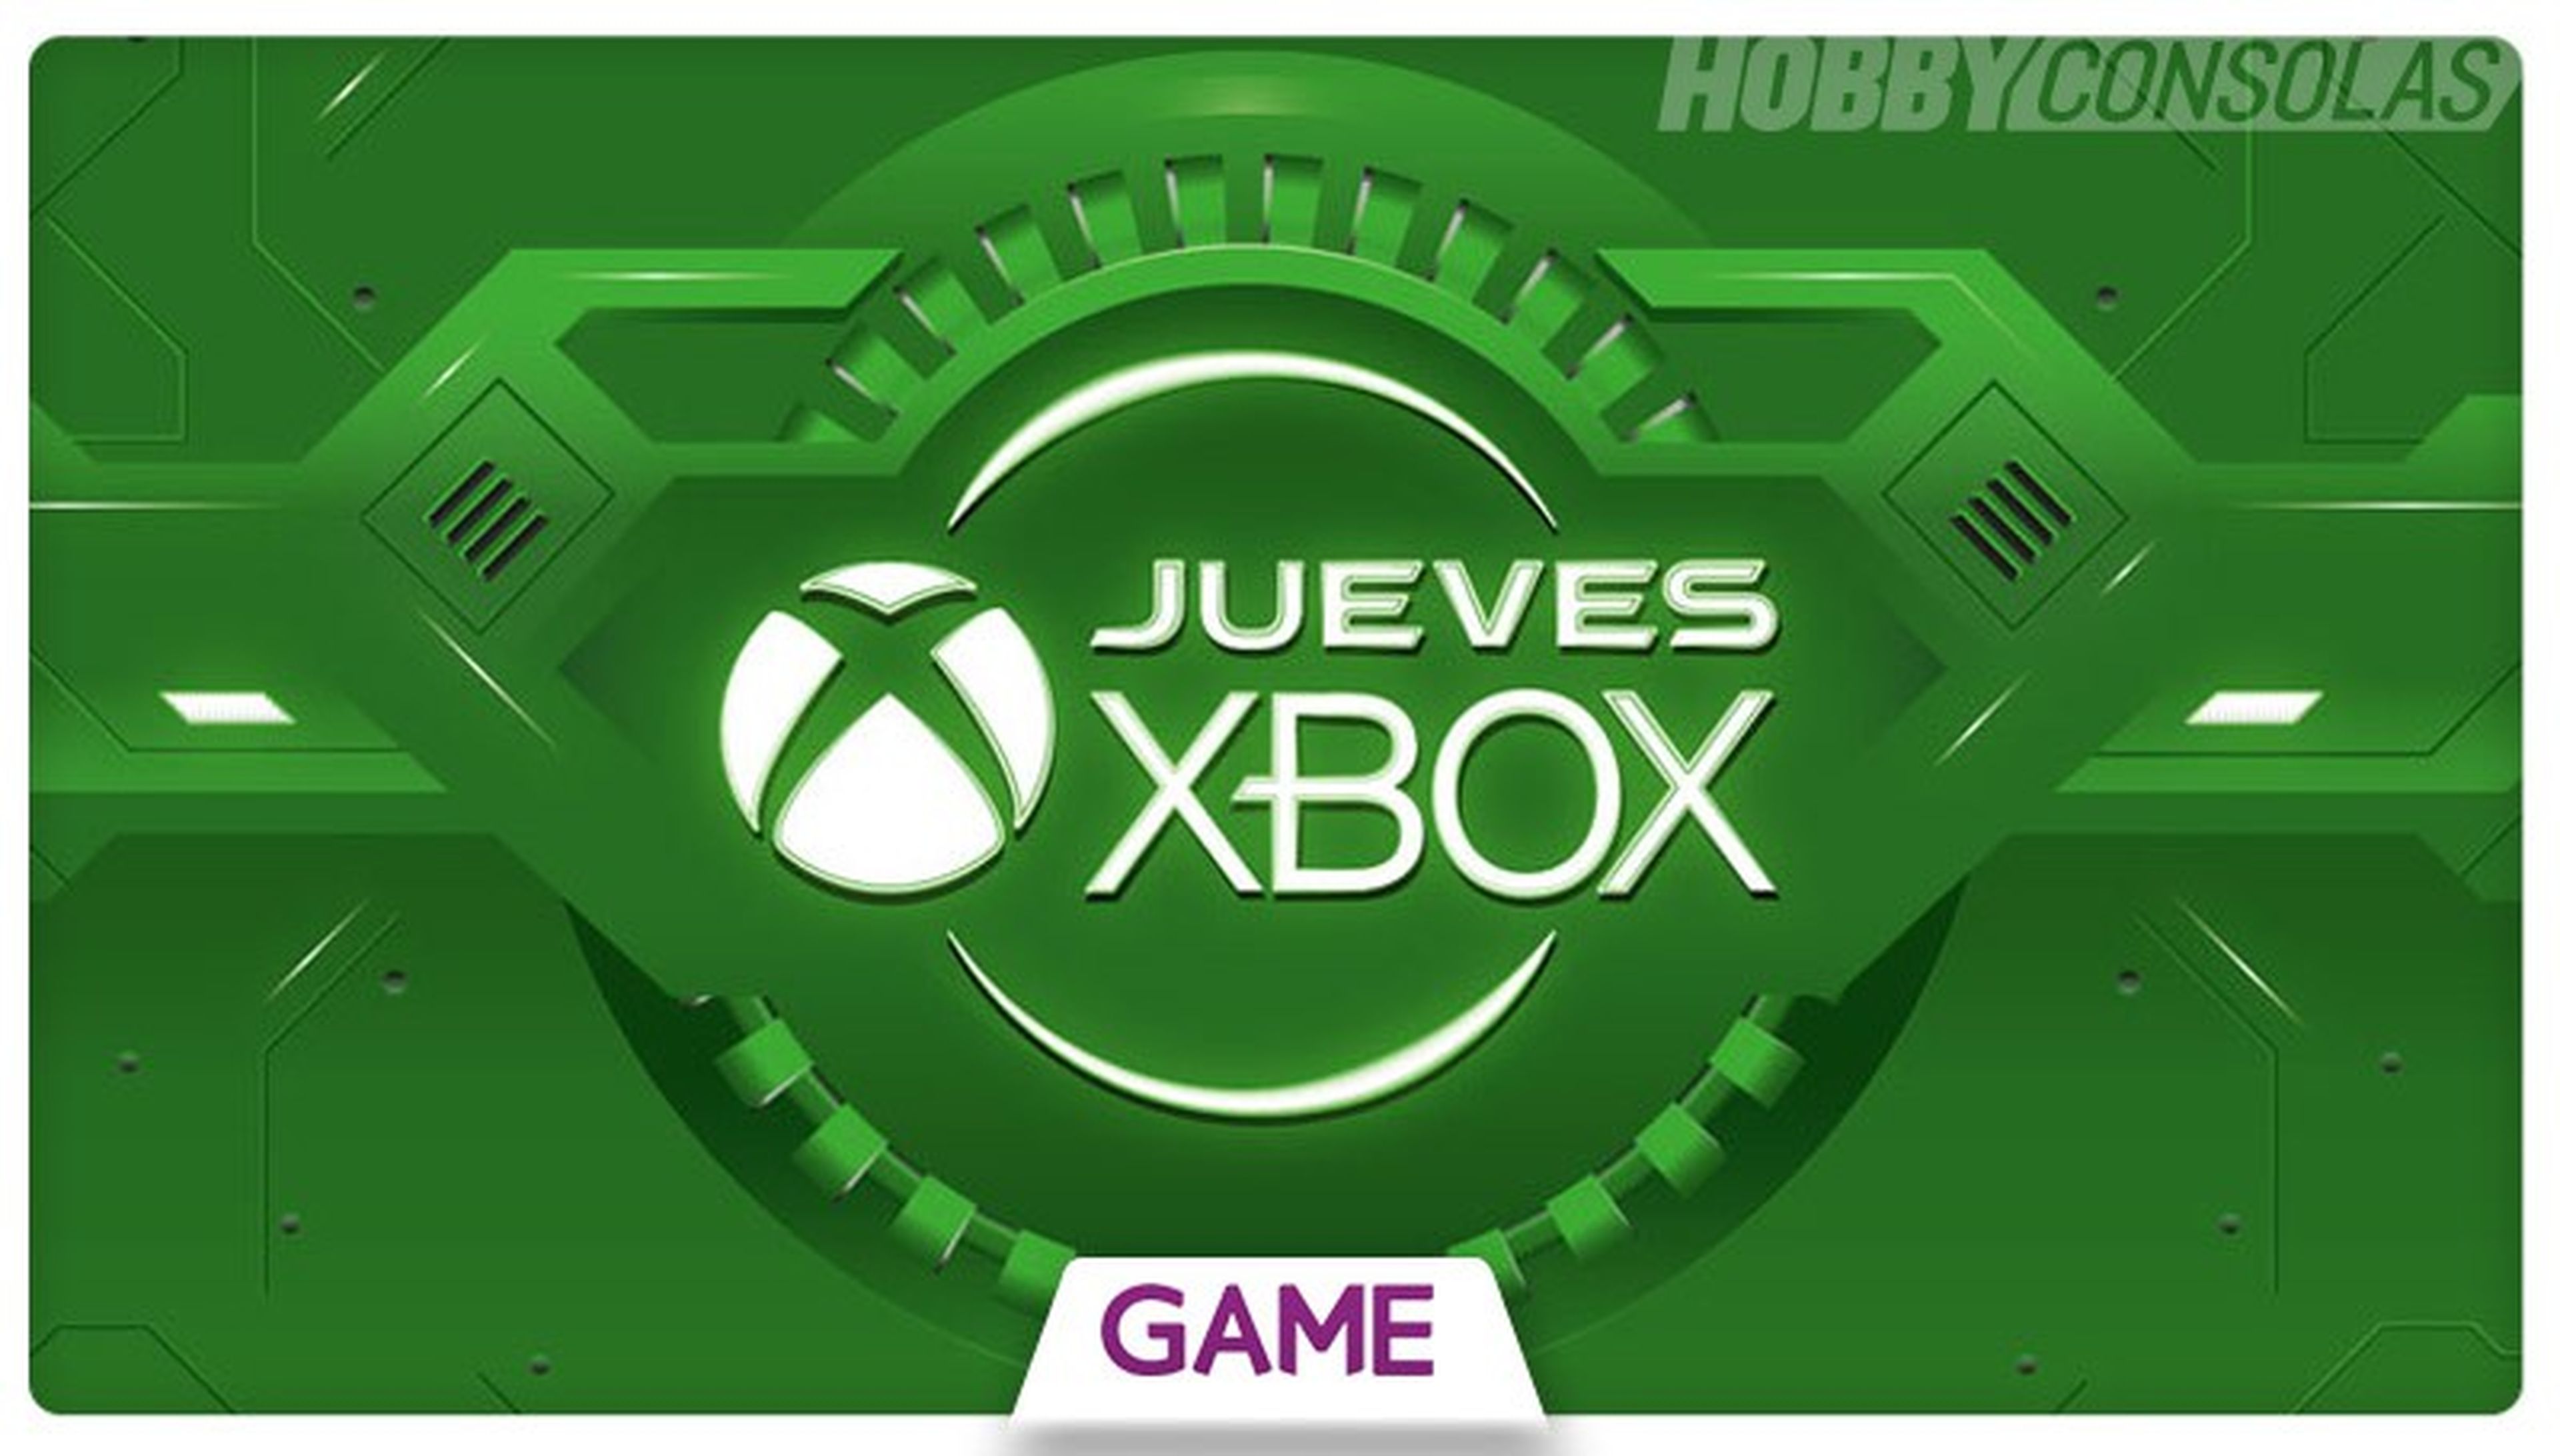 Jueves Xbox en GAME - Ofertas del 23/06/2016